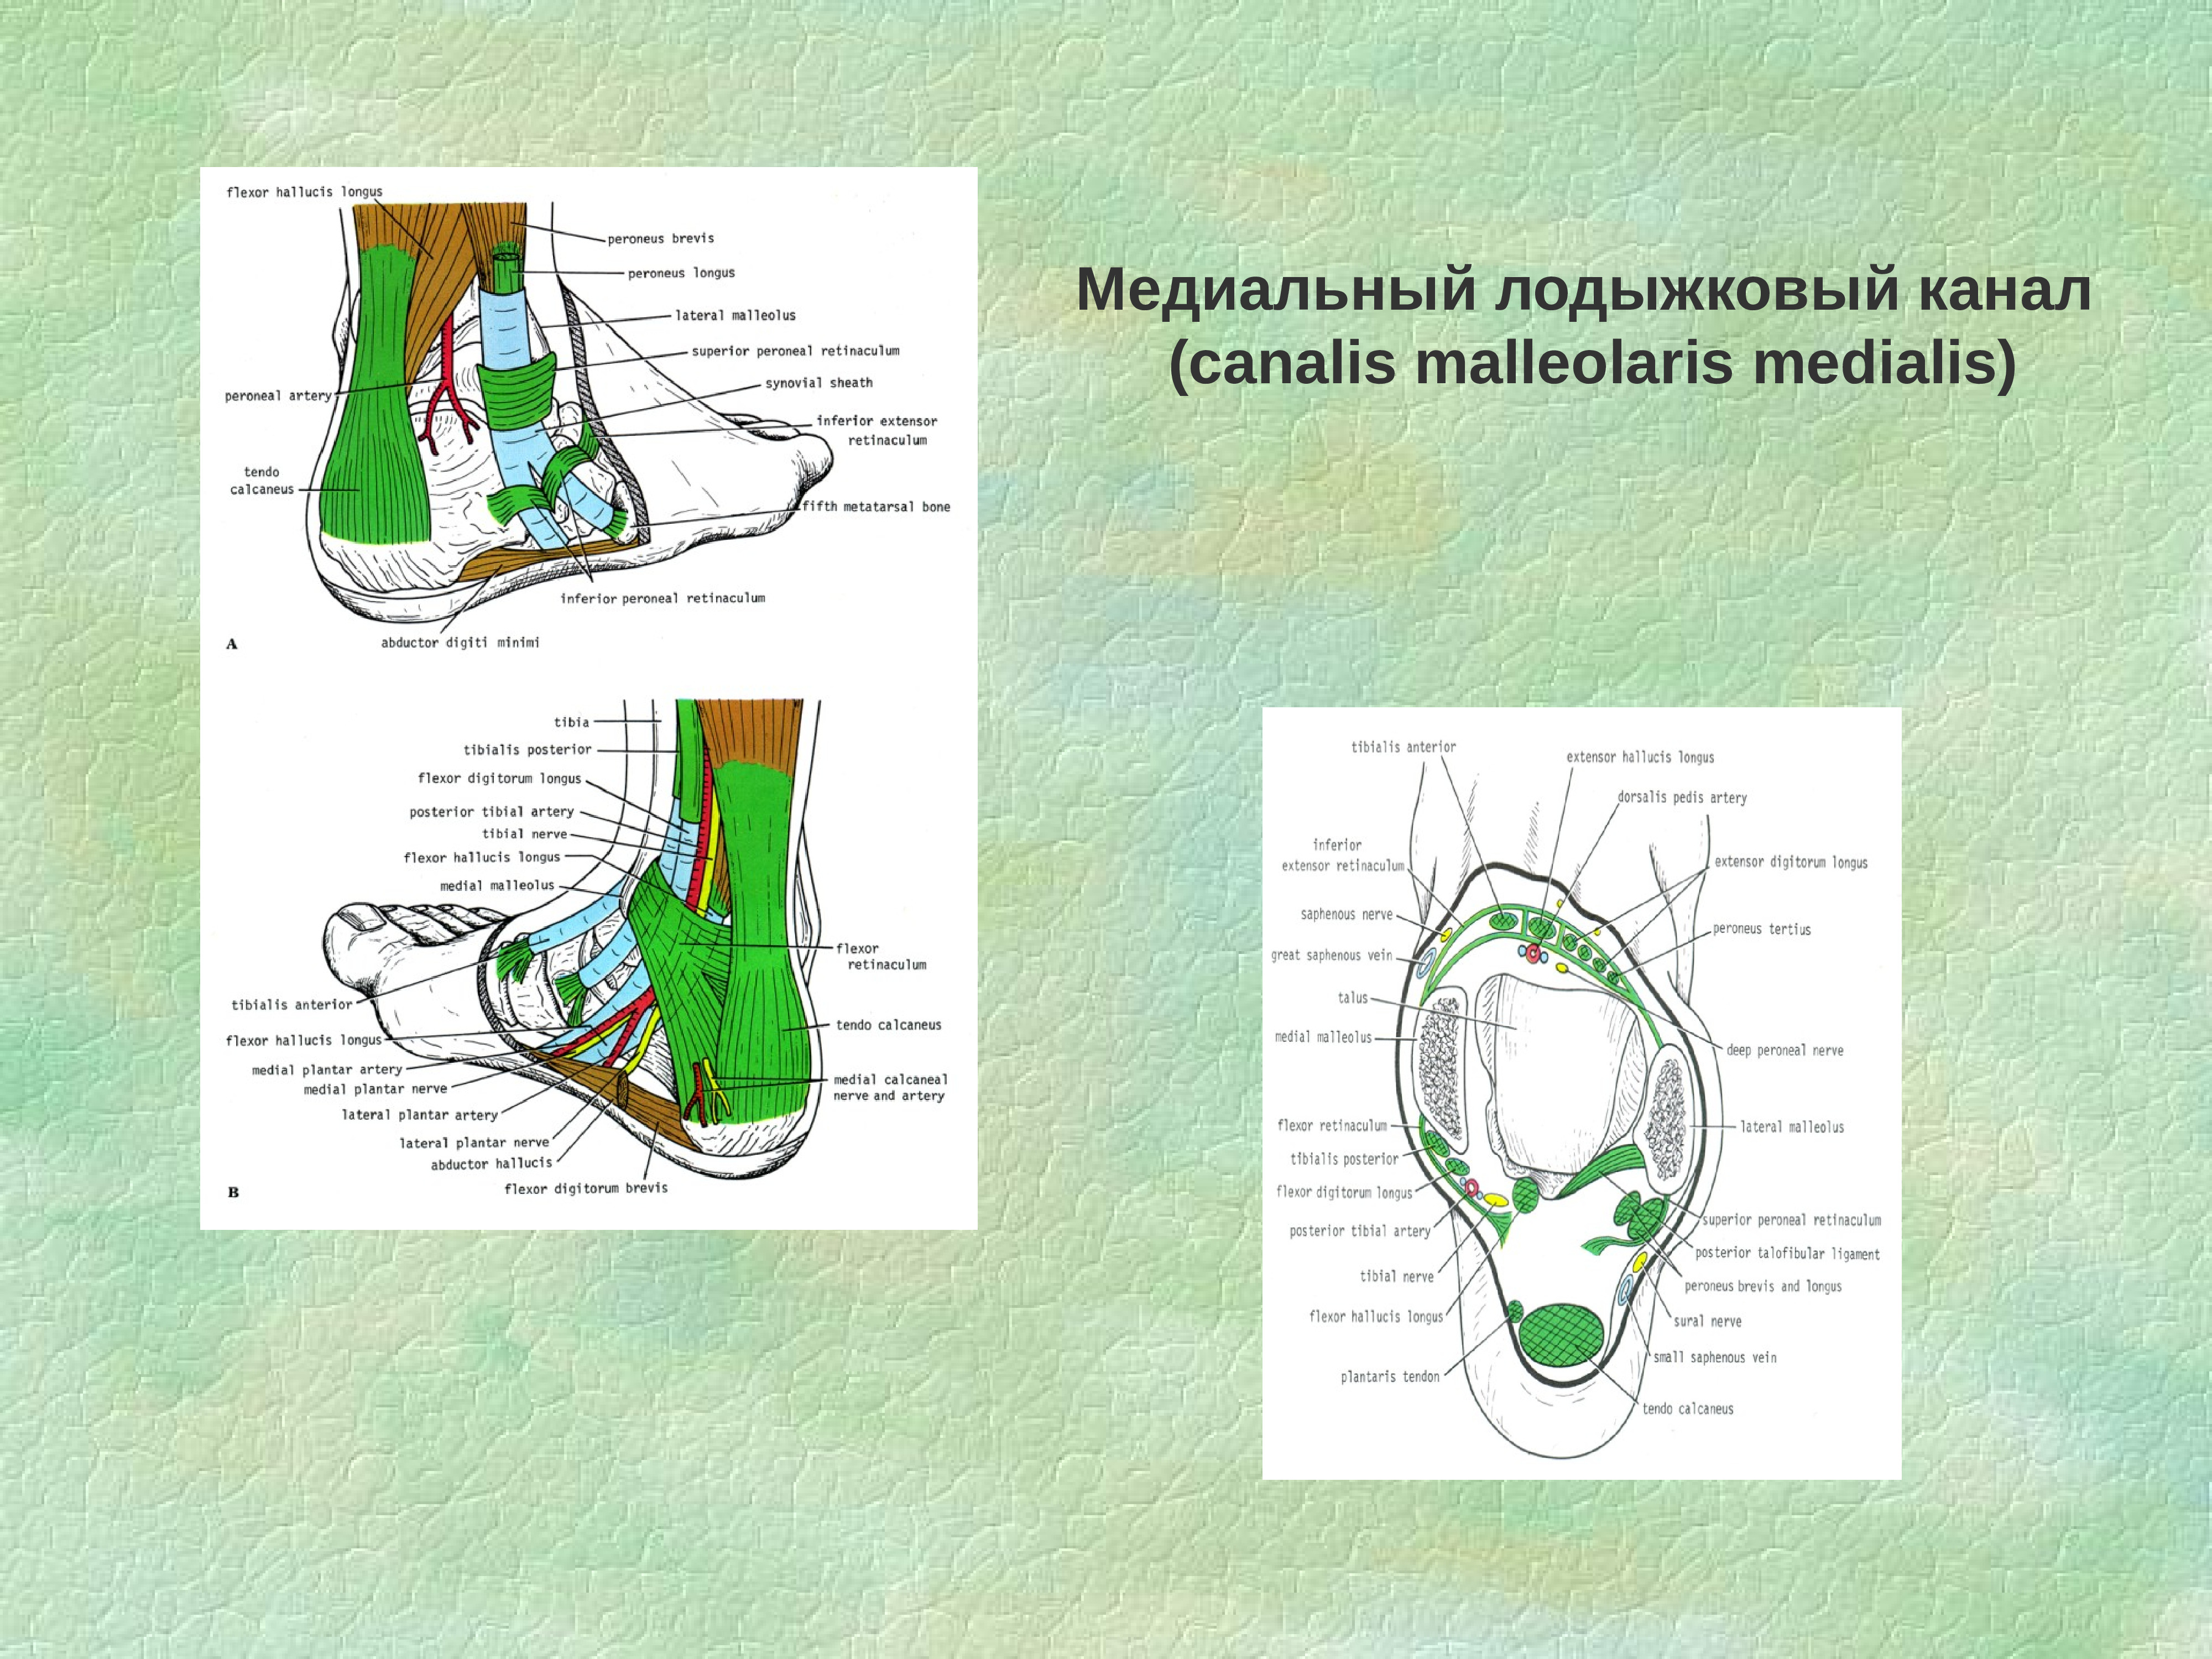 Каналы подошвы. Топографическая анатомия Canalis malleolaris medialis. Медиально лодыжечный канал топографическая анатомия. Топография медиального лодыжкового канала. Медиальная лодыжка топографическая анатомия.